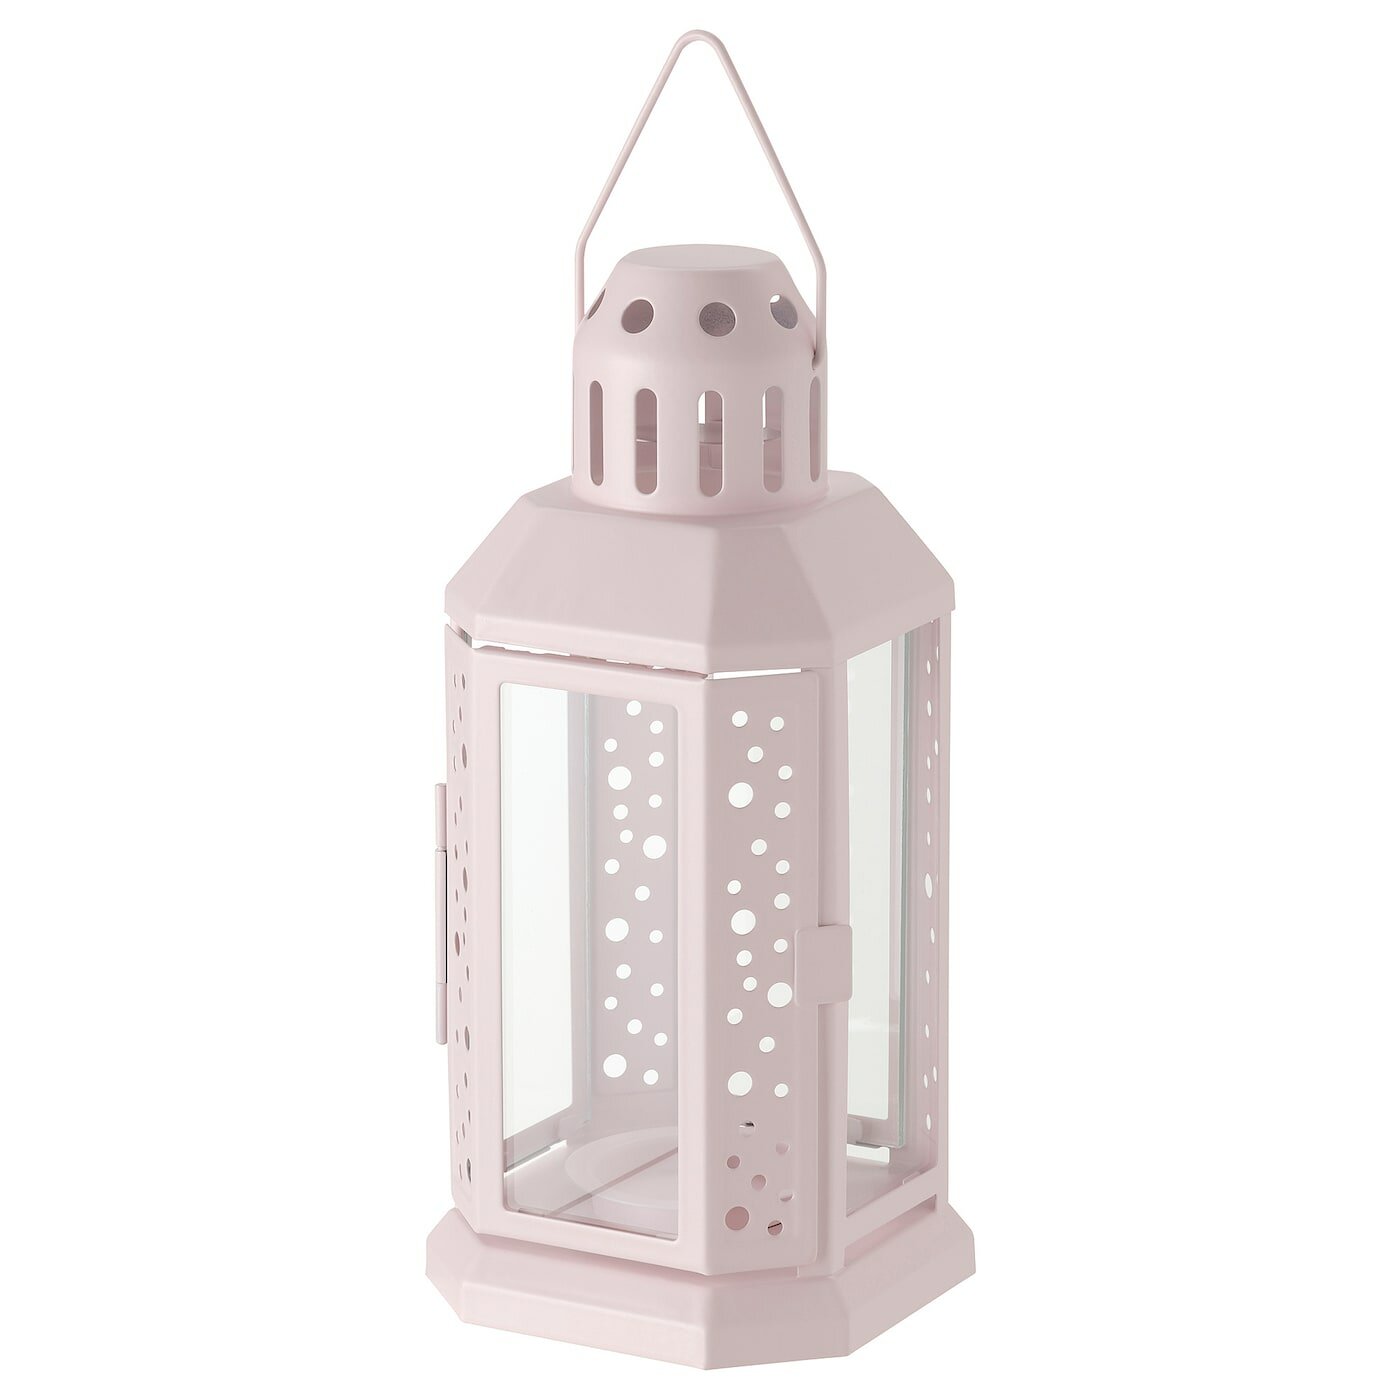 Подсвечник энрум икеа (ENRUM IKEA), 22 см, фонарь для свечи, бледно-розовый